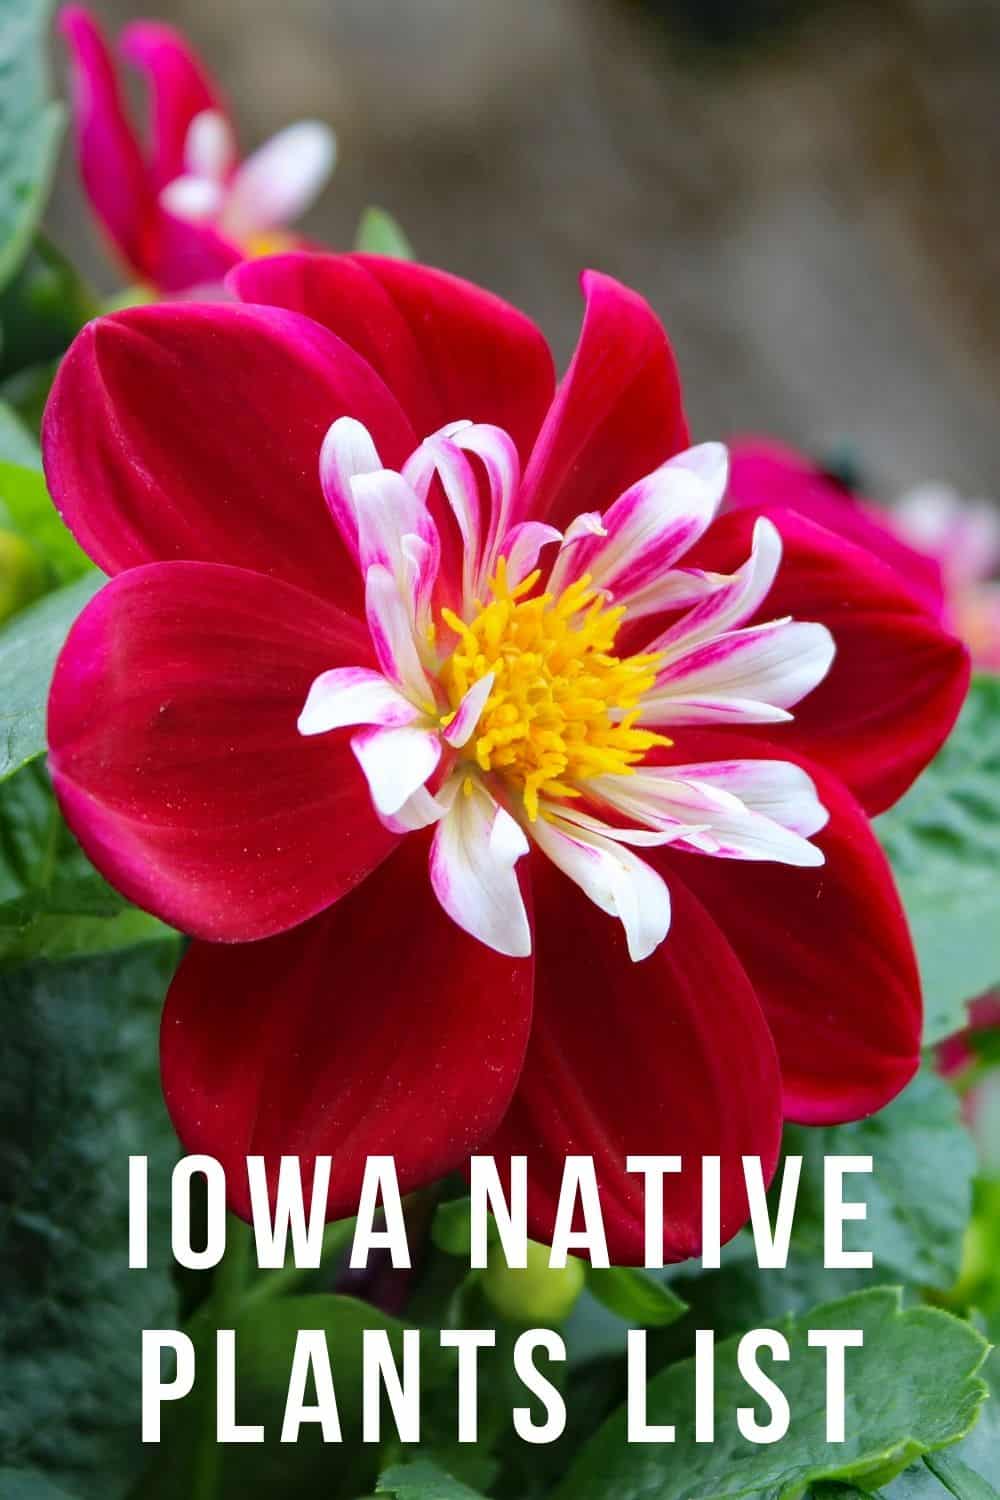 Iowa native plants list